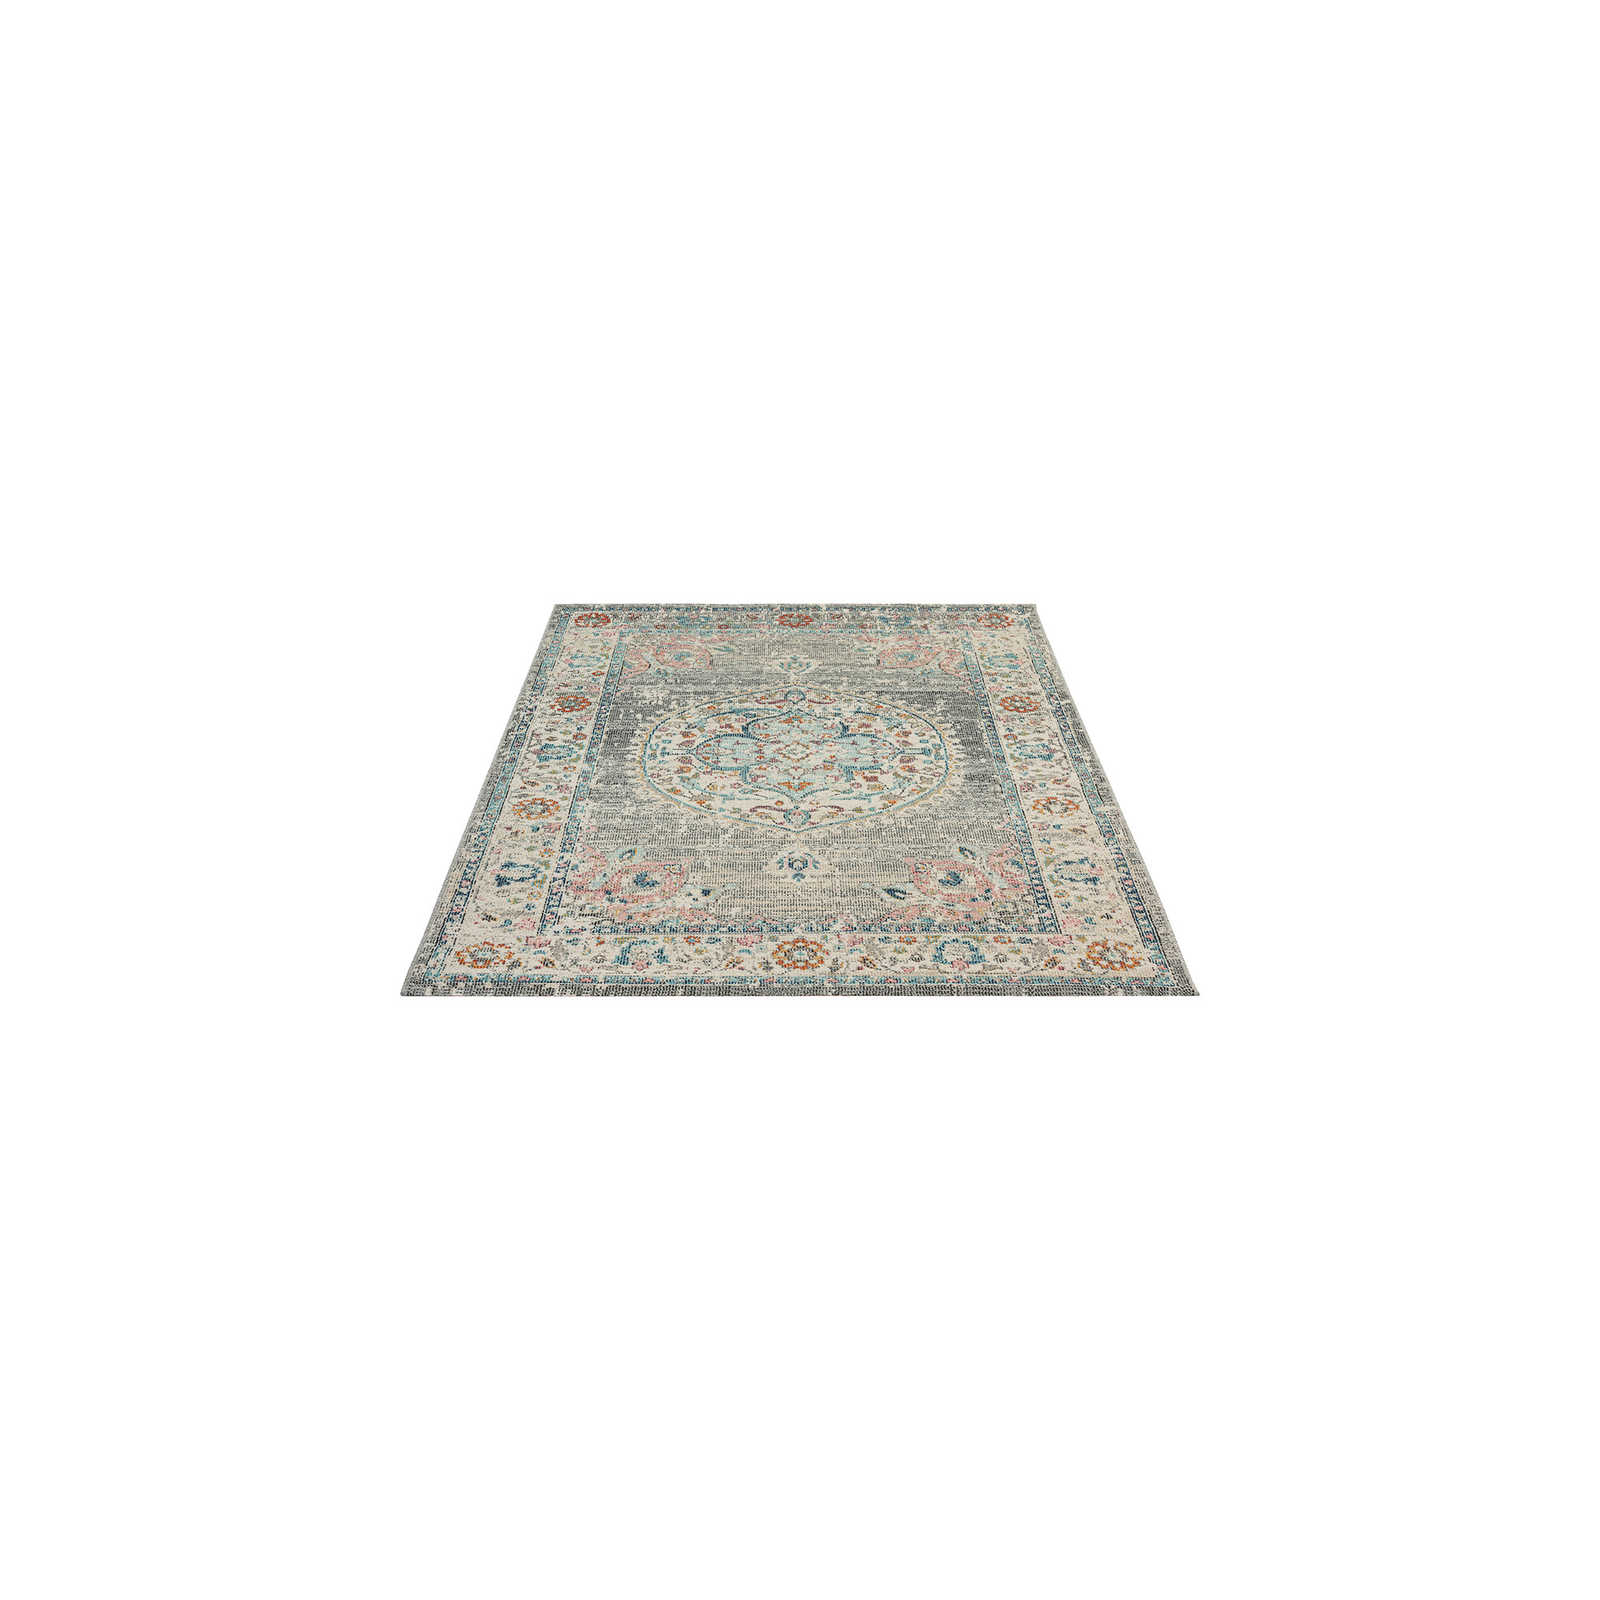 Grauer Outdoor Teppich aus Flachgewebe – 170 x 120 cm
